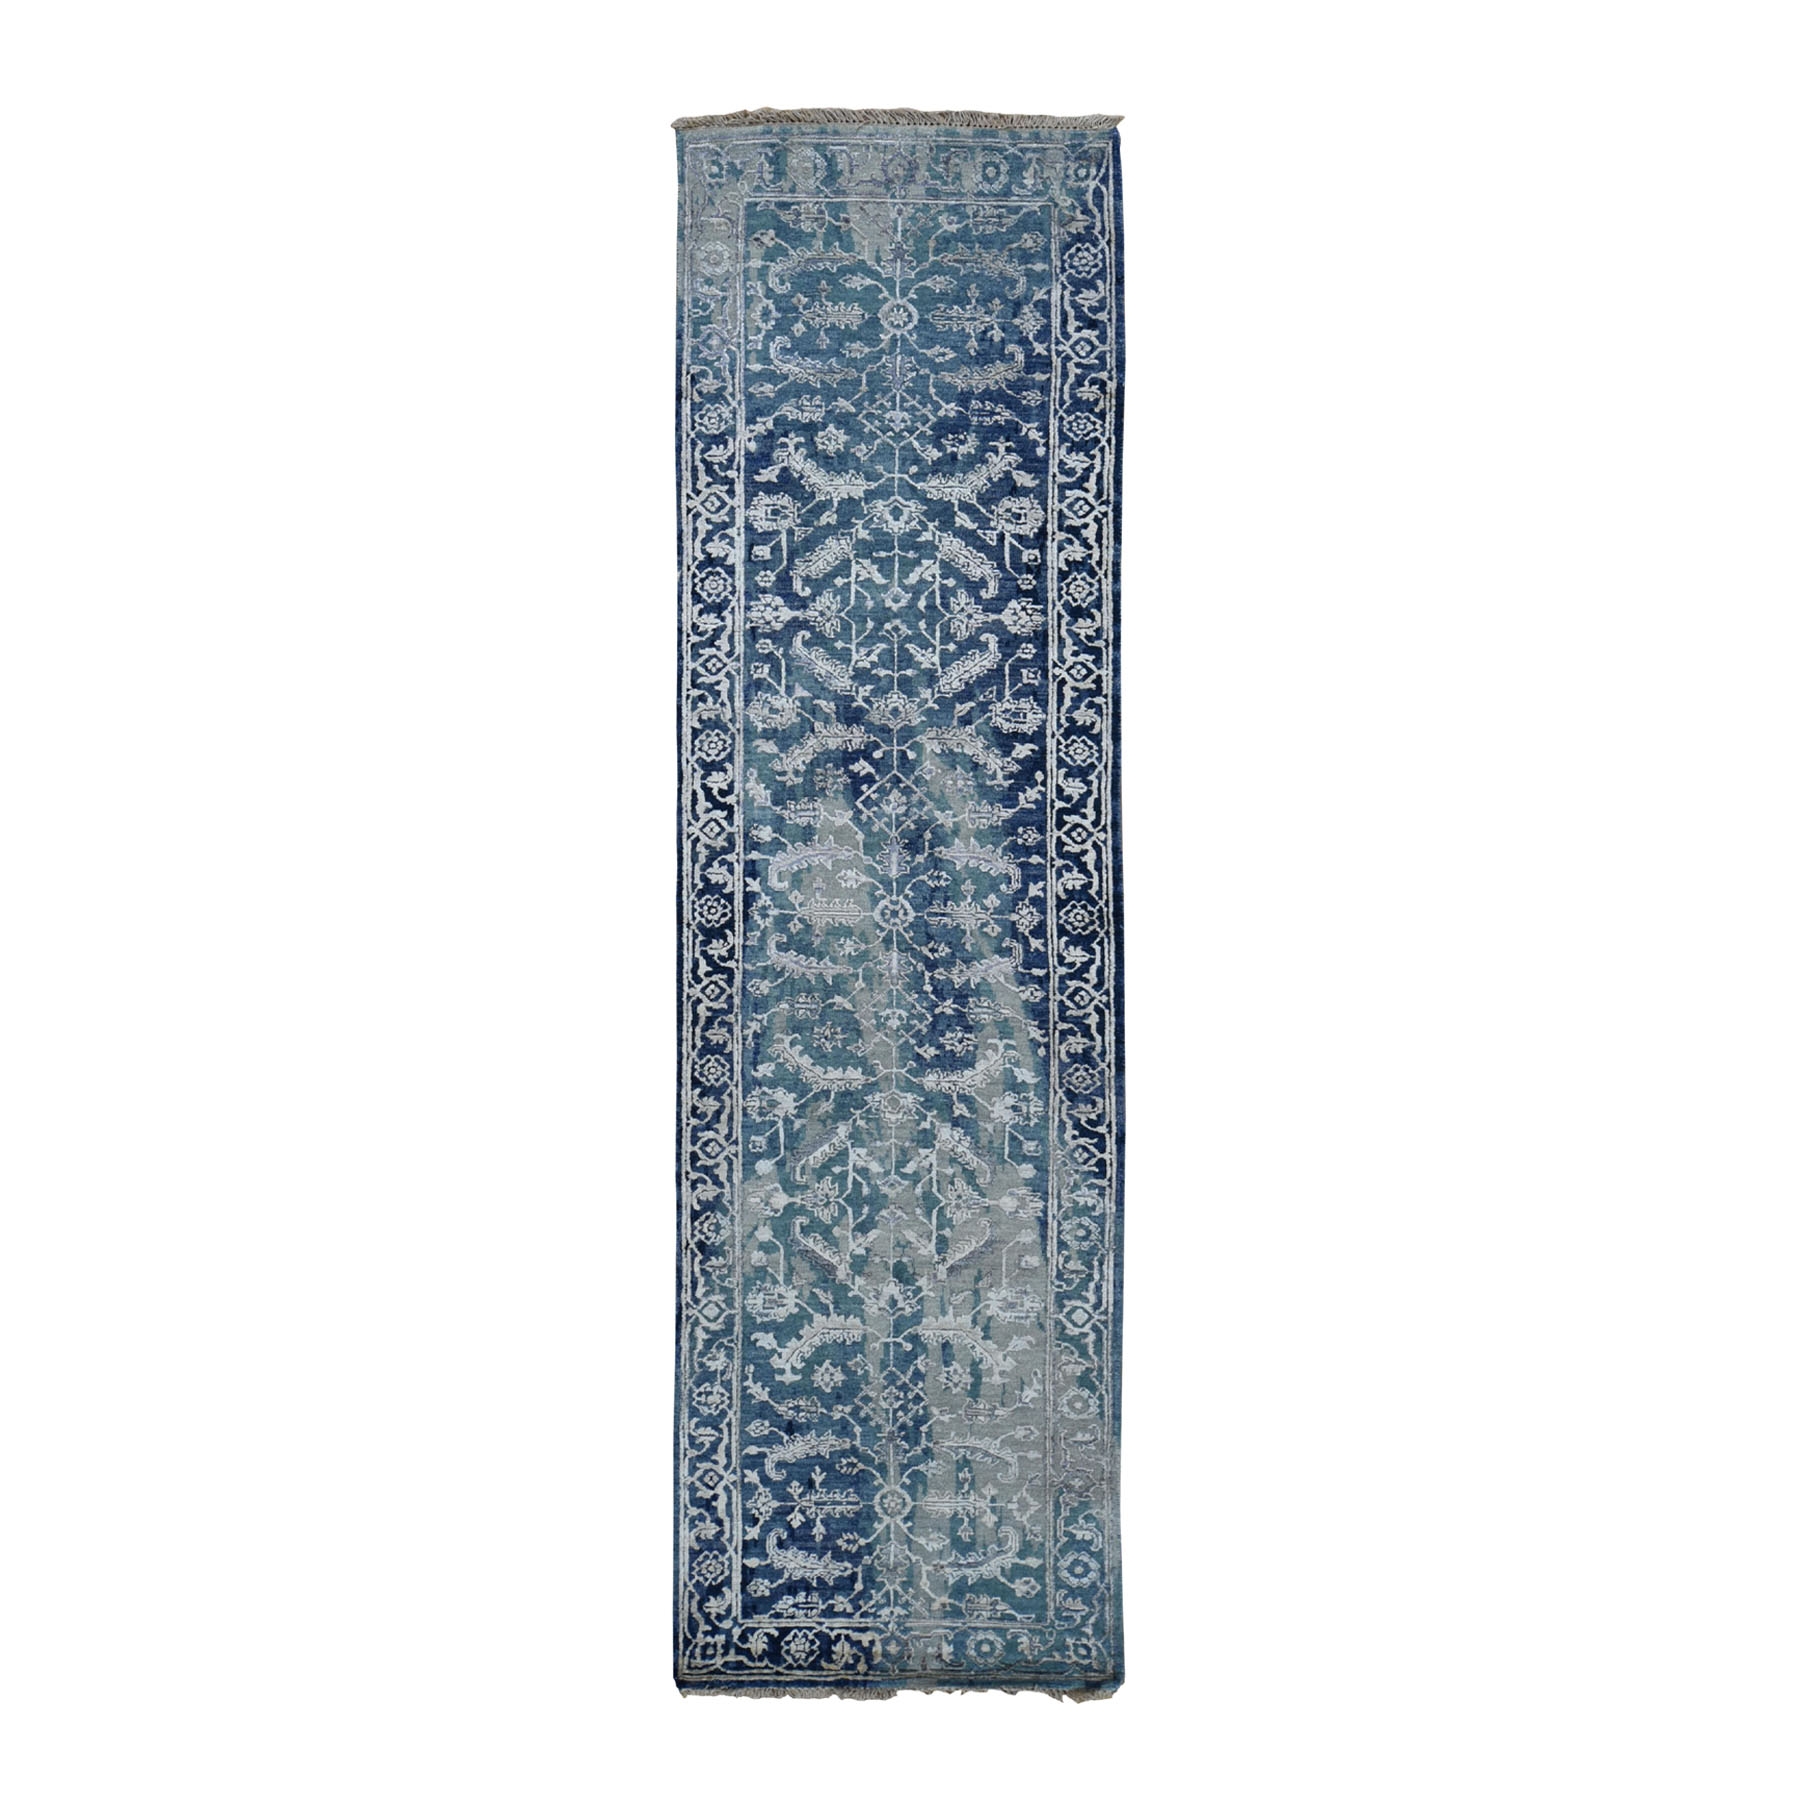 2'6"x9'9" Broken Persian Heriz All Over Design Wool And Silk Runner Hand Woven Oriental Rug 